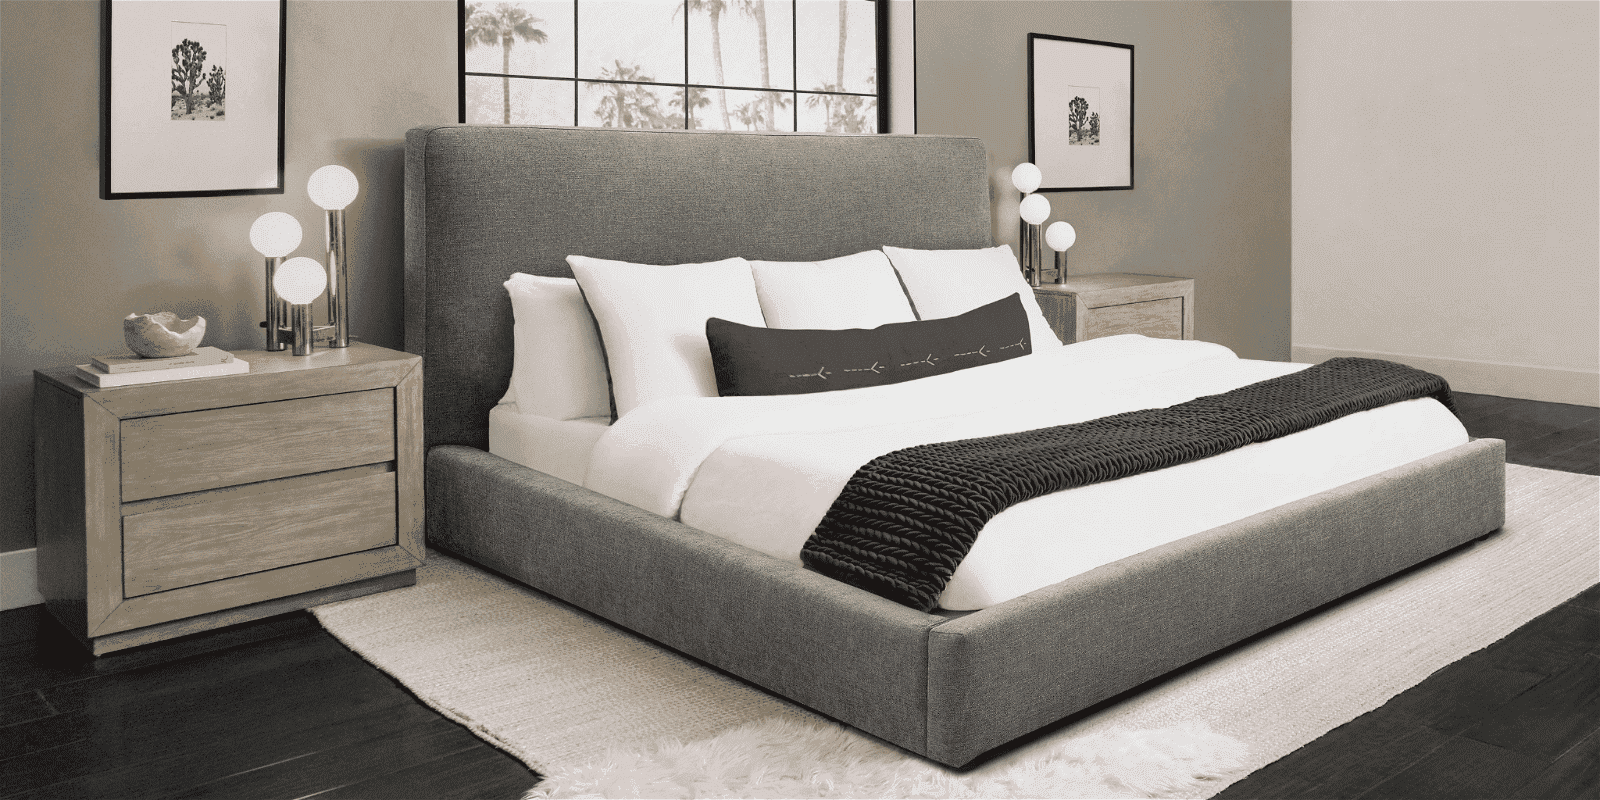 Shop Upholstered Beds